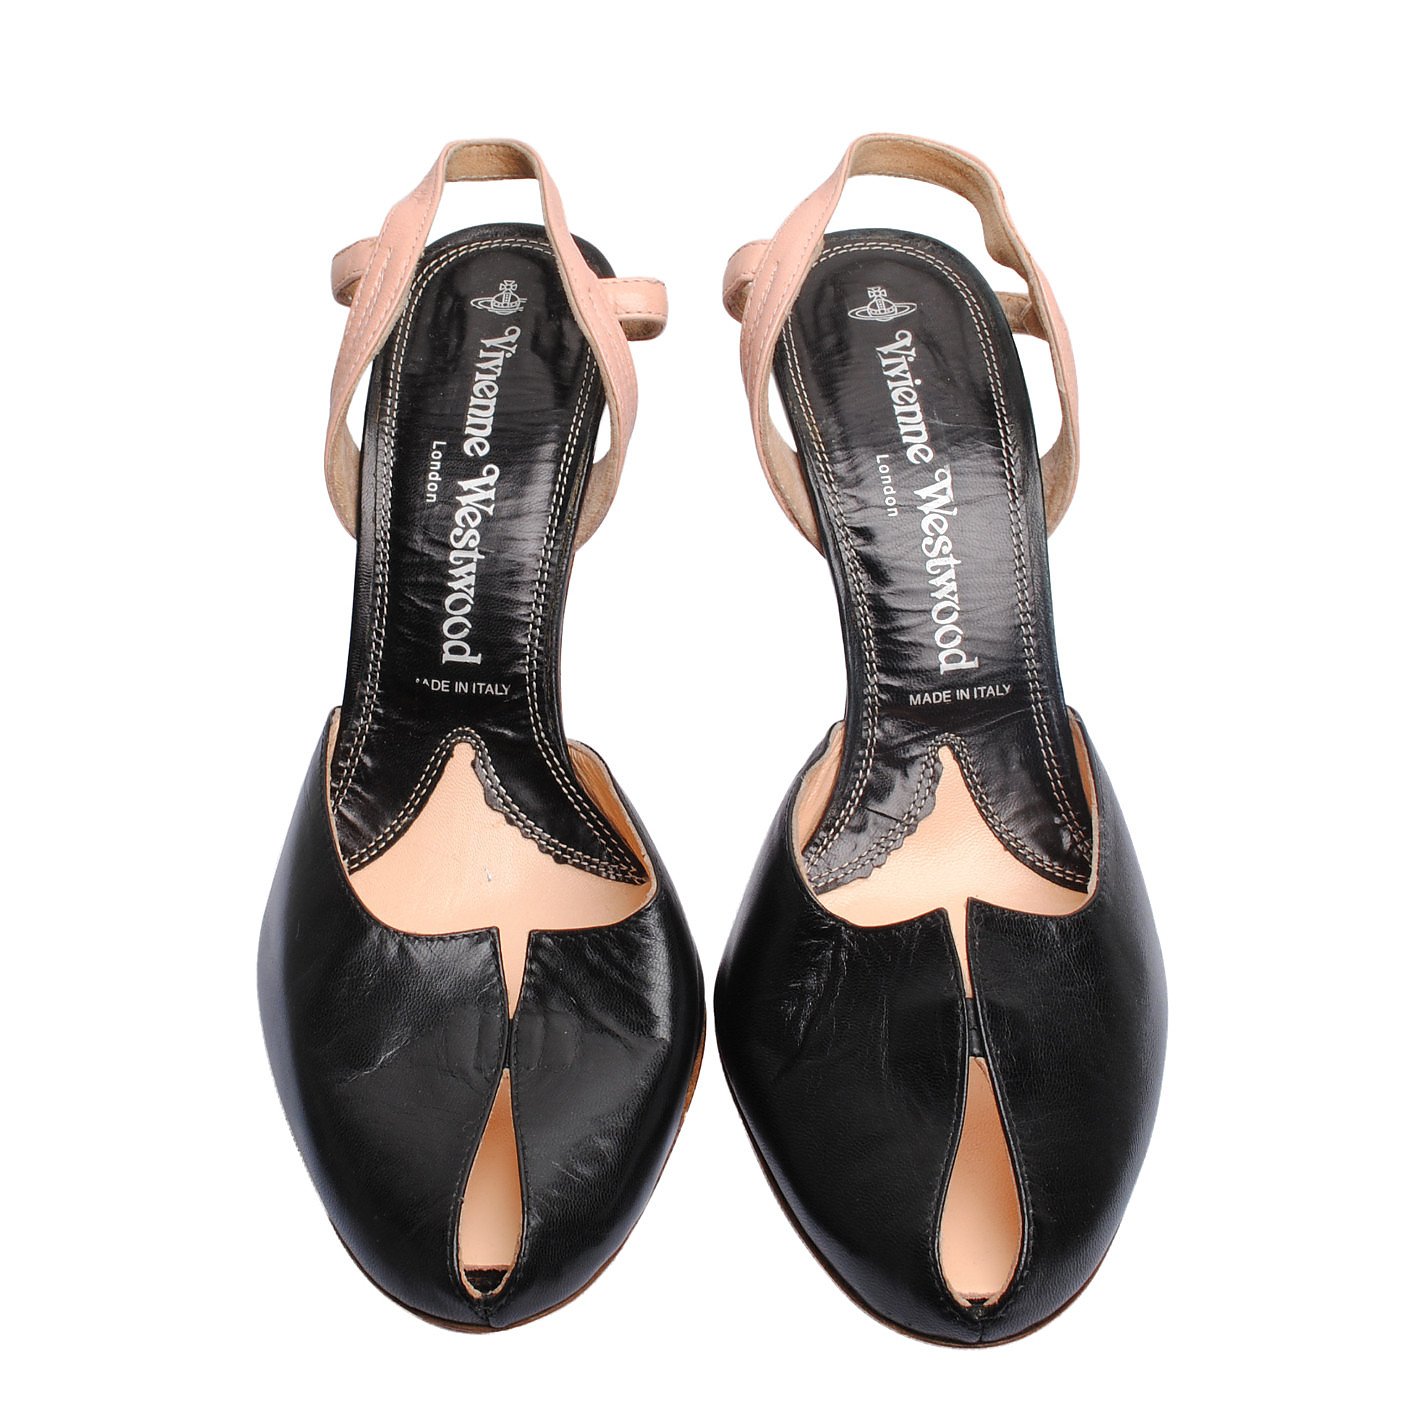 Vivienne Westwood Leather Peep-Toe Pumps